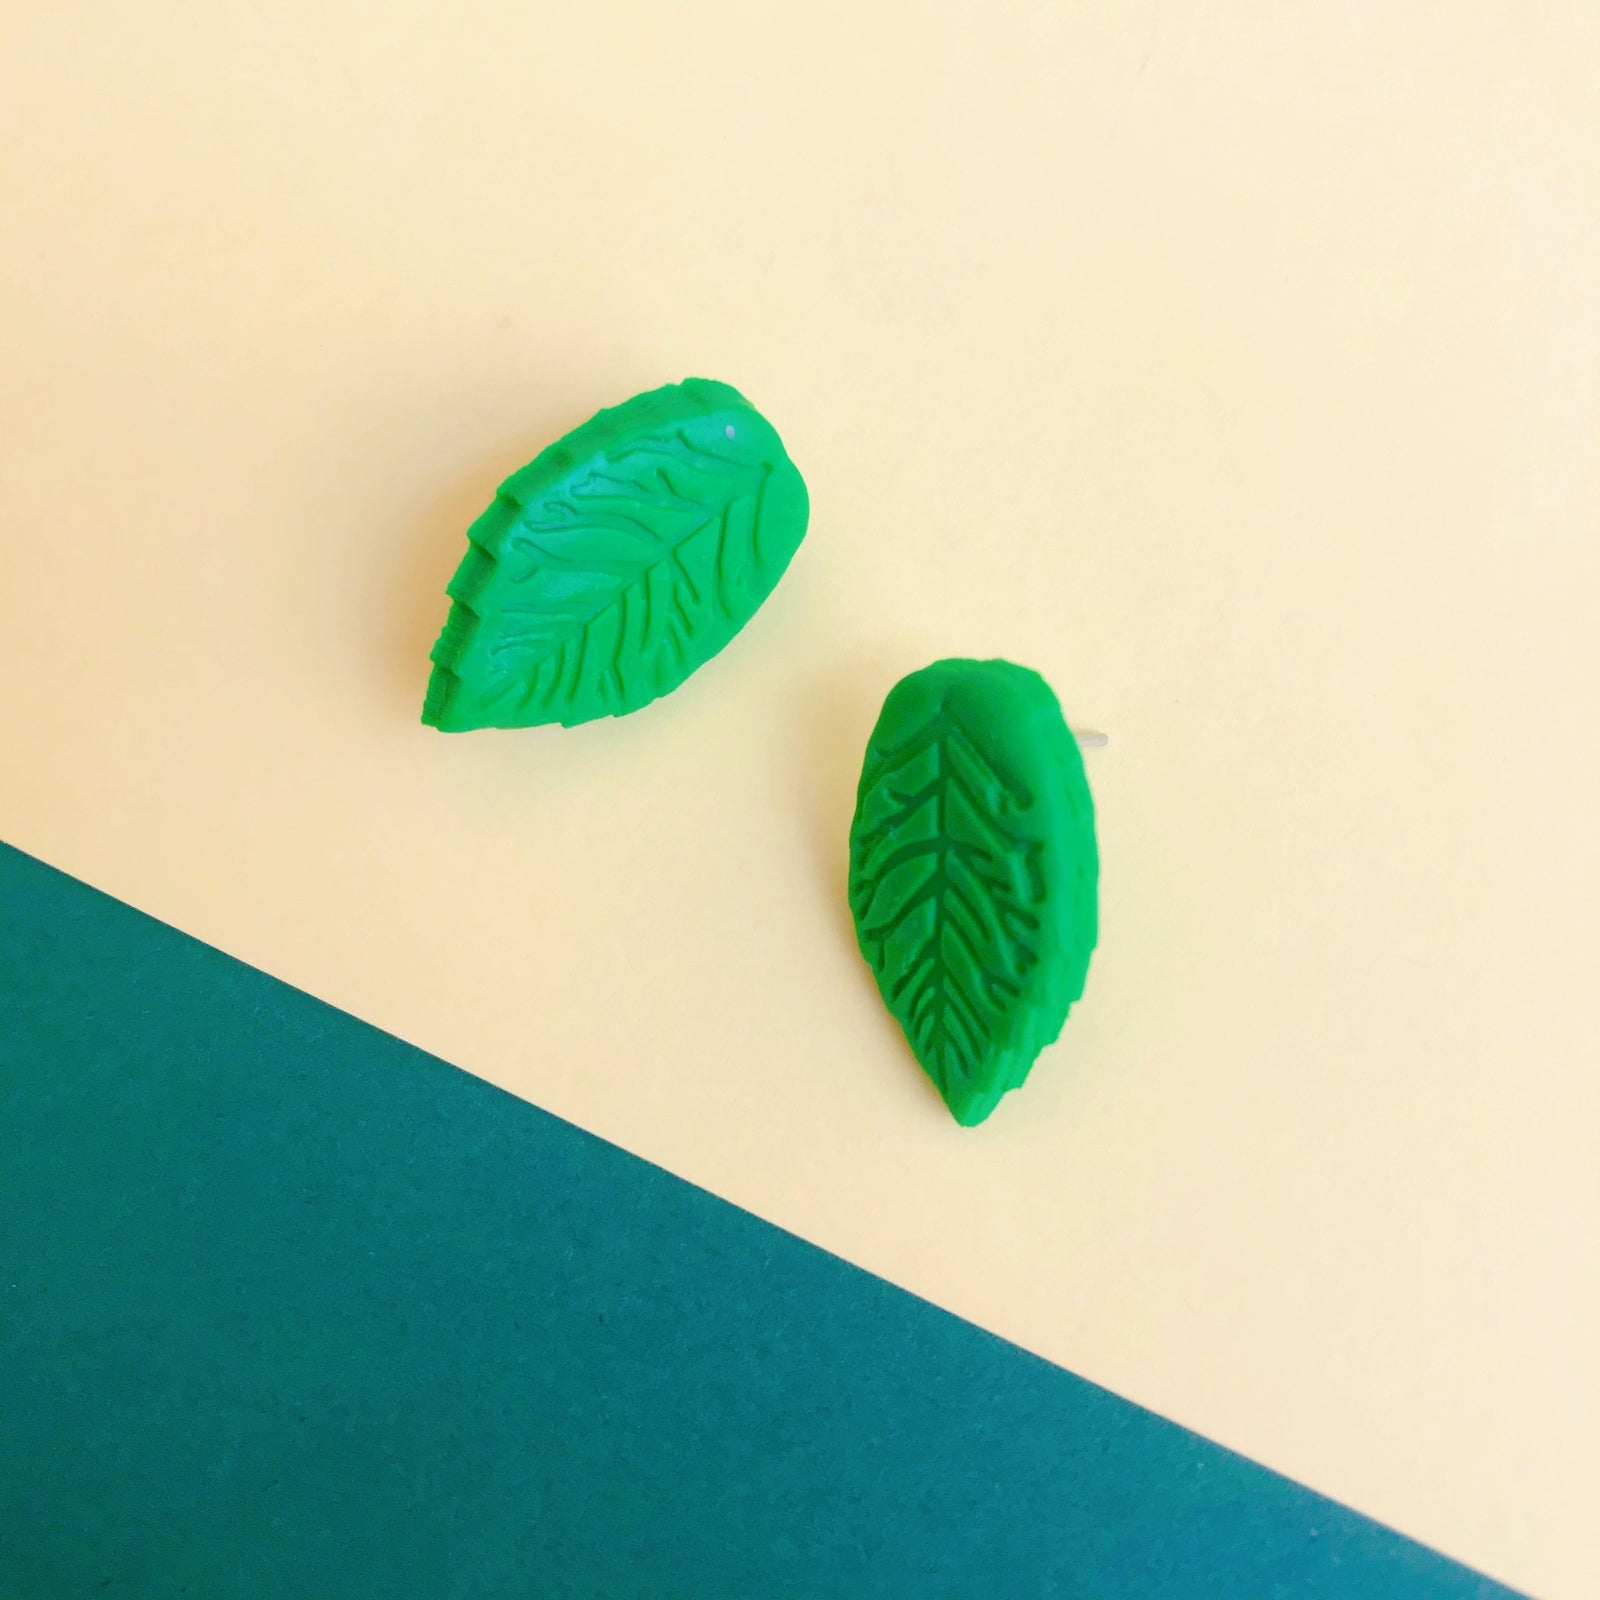 Luce un look de frescura con unos originales pendientes de hojas verdes Novedades | MANGALA, Pendientes